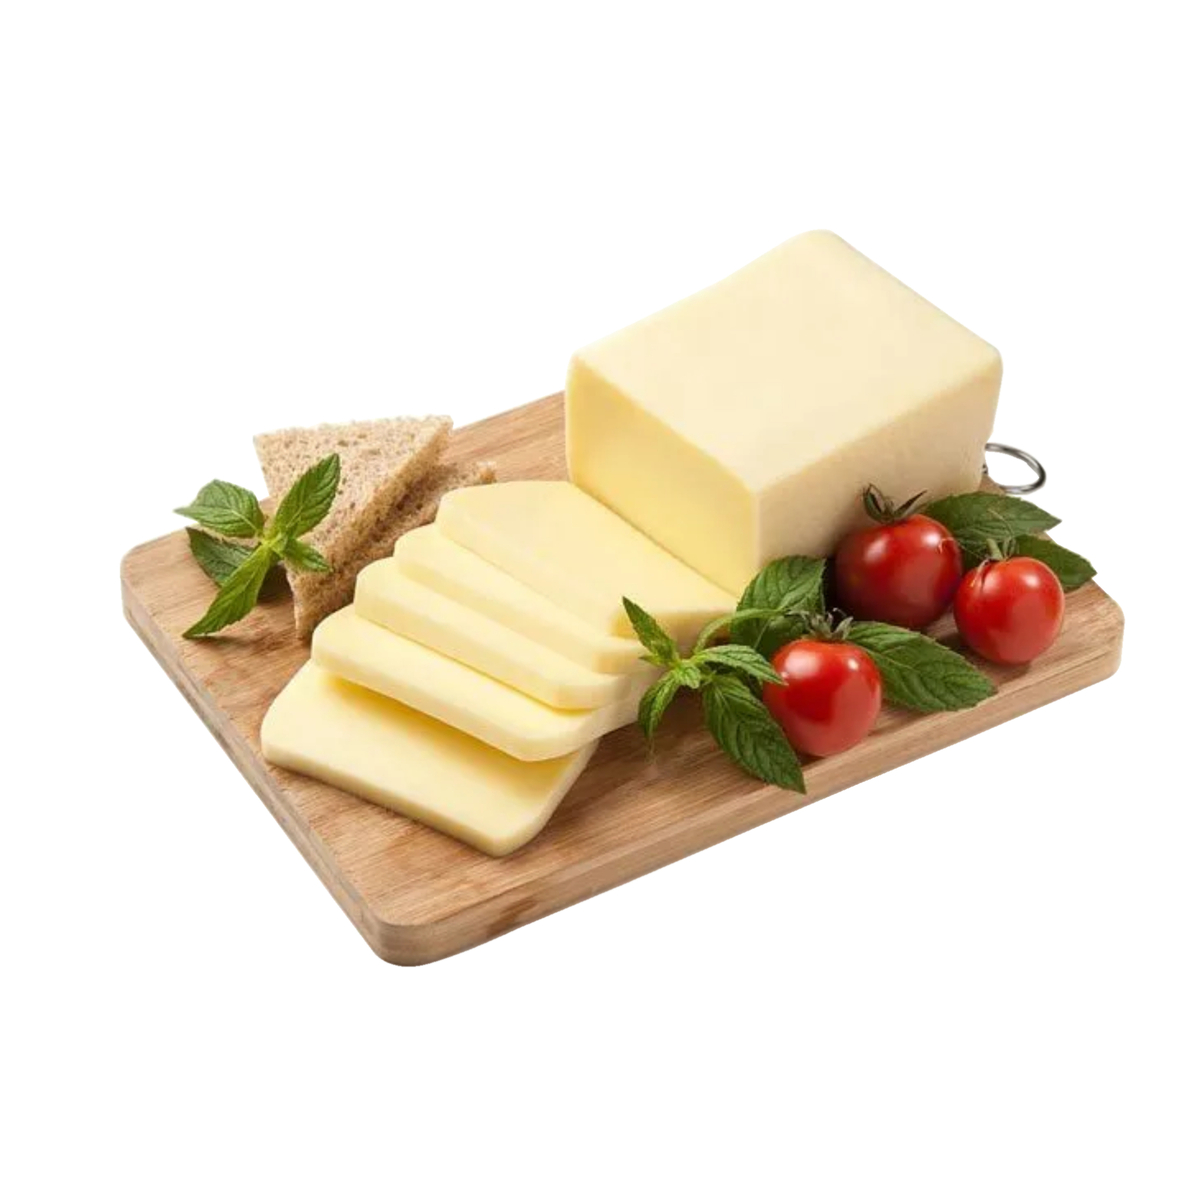 اشتري قم بشراء شيدر إنجليزي معتدل الوزن التقريبي 250 جم Online at Best Price من الموقع - من لولو هايبر ماركت English Cheese في السعودية